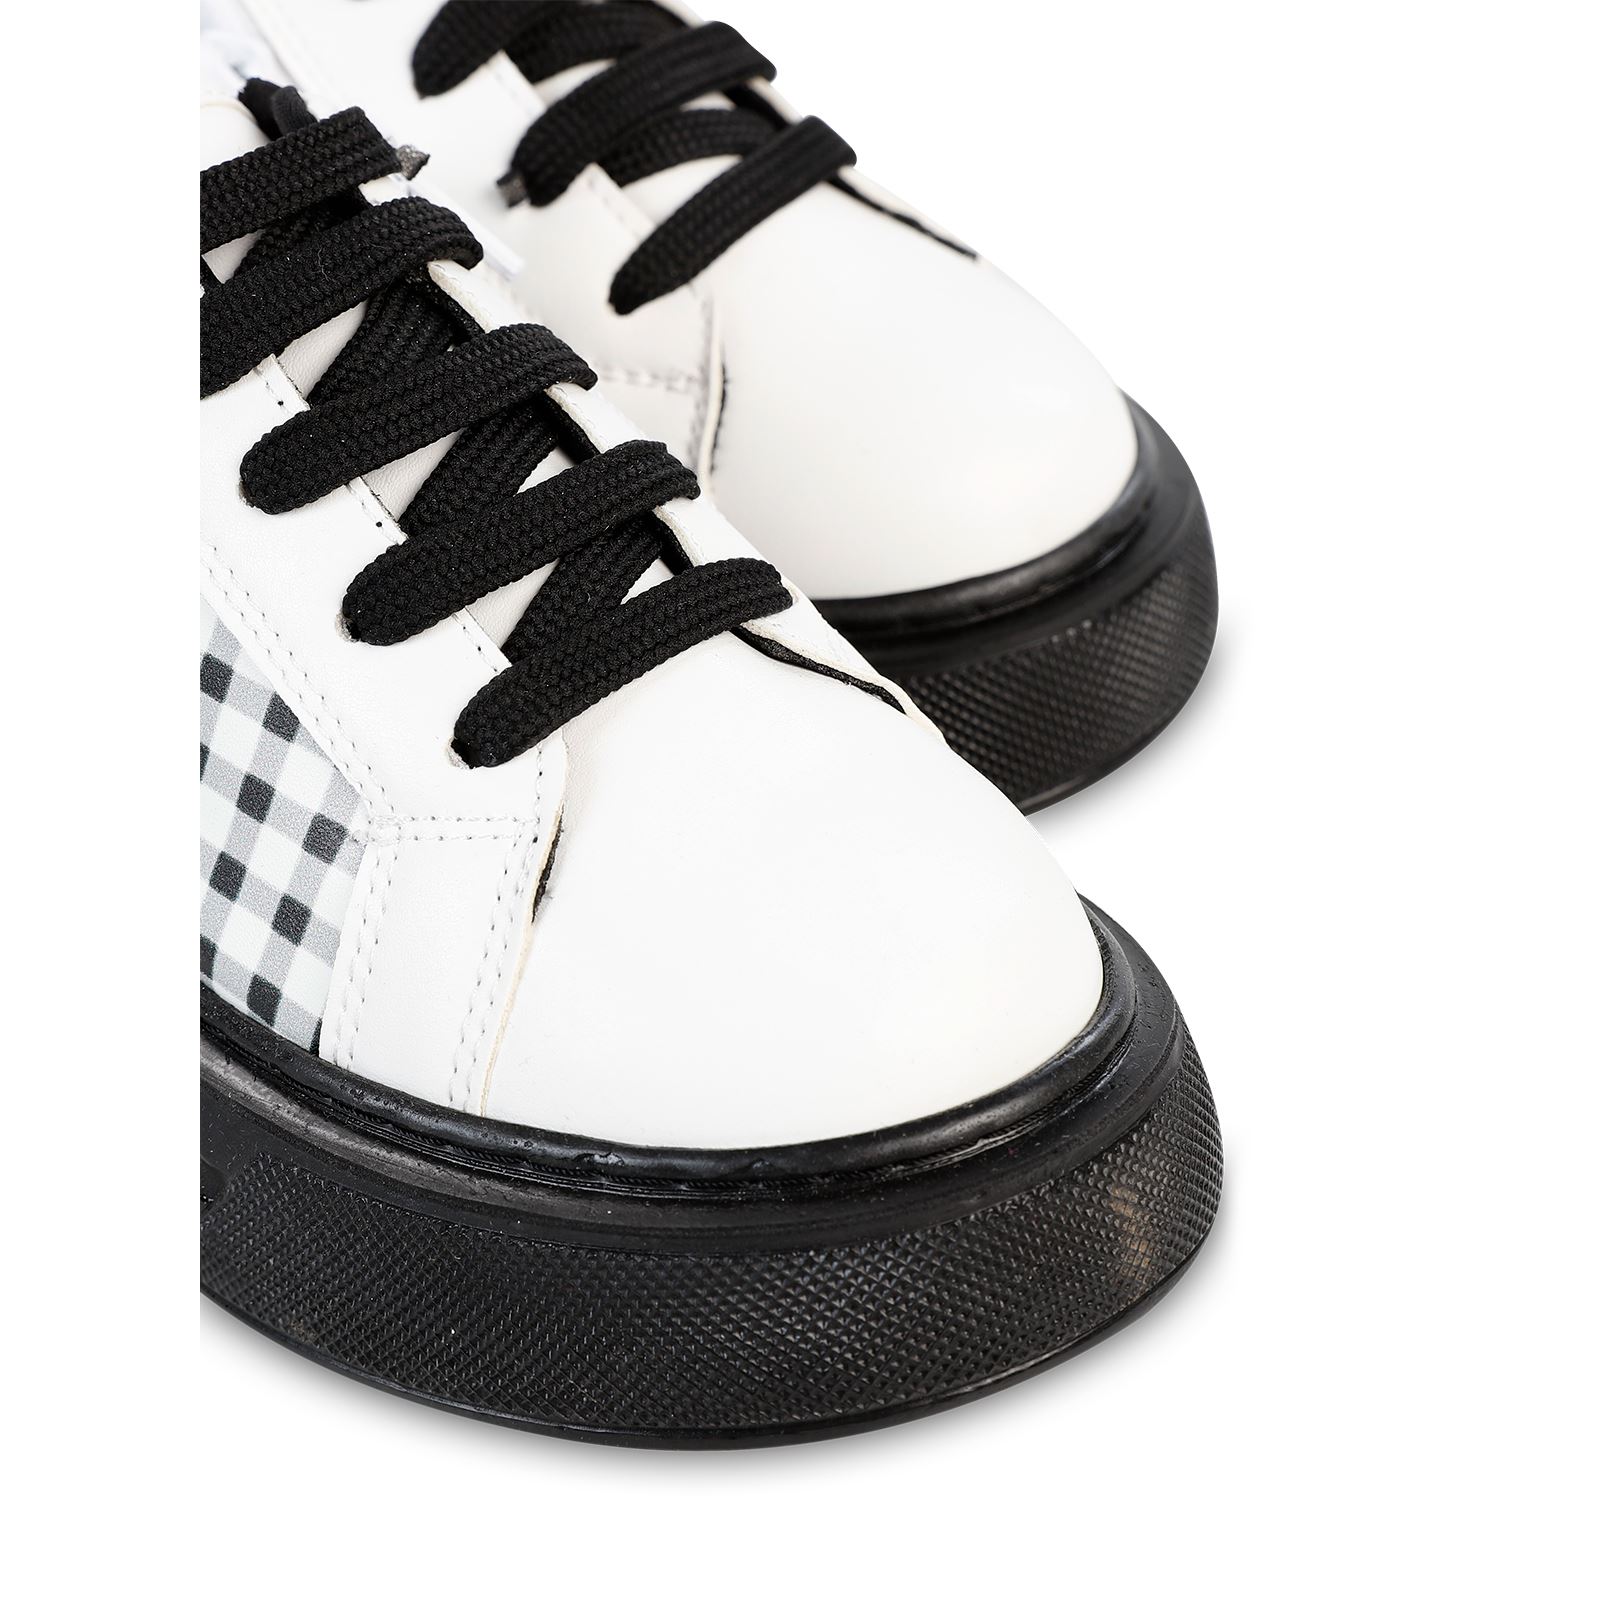 Civil Kız Çocuk Spor Ayakkabı 31-35 Numara Siyah-Beyaz